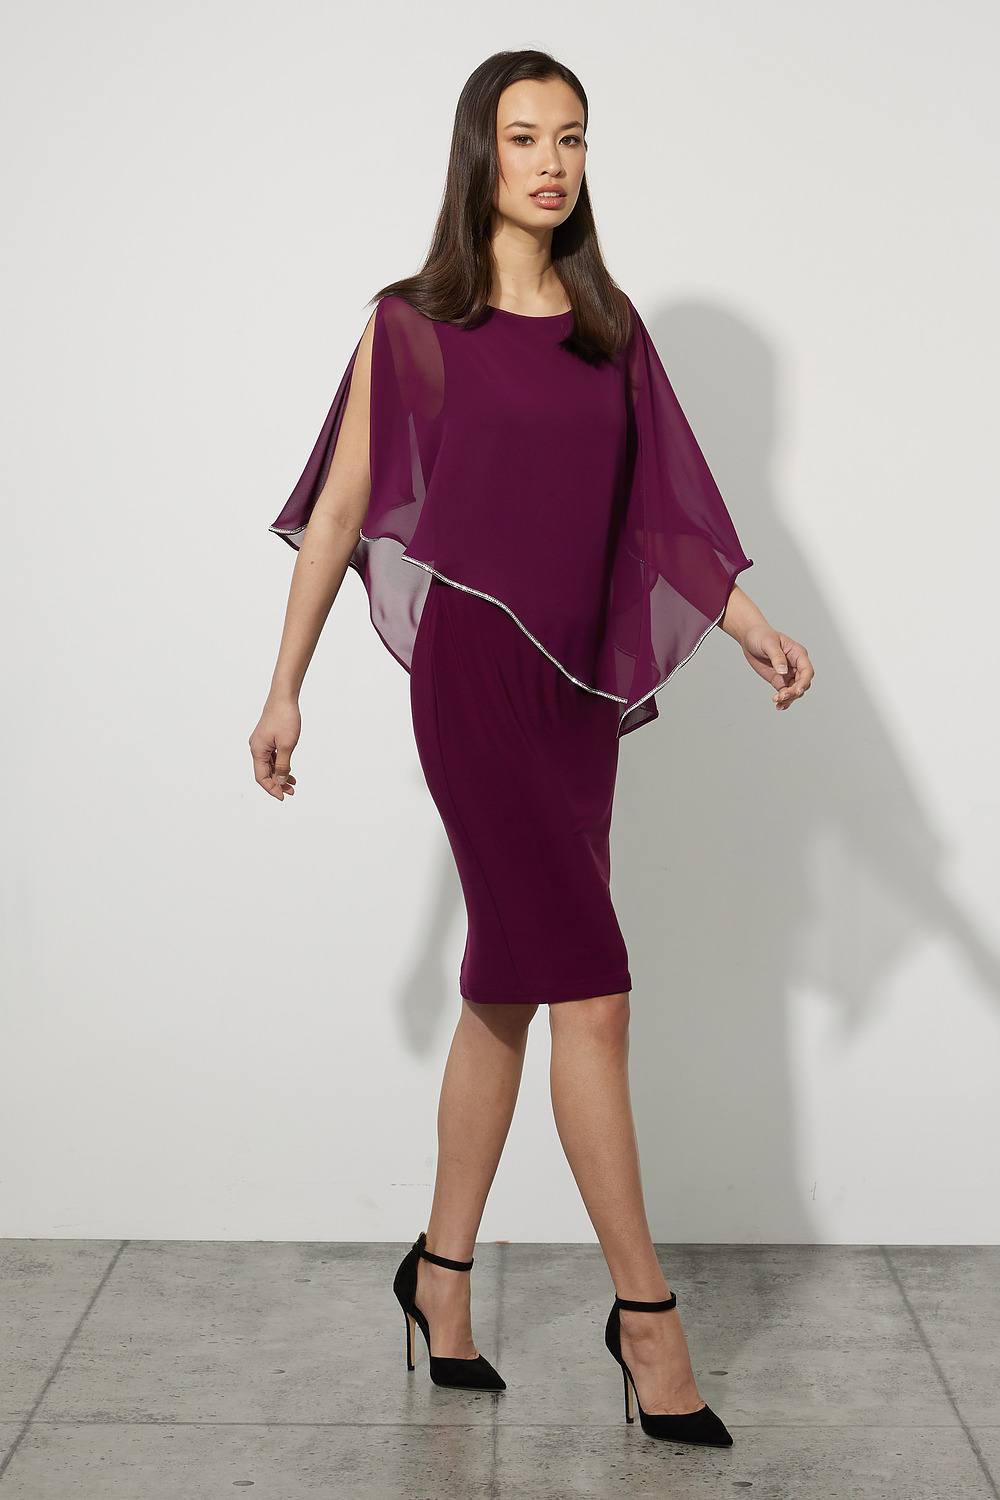 Joseph Ribkoff Chiffon Overlay Dress Style 223762. Mulberry